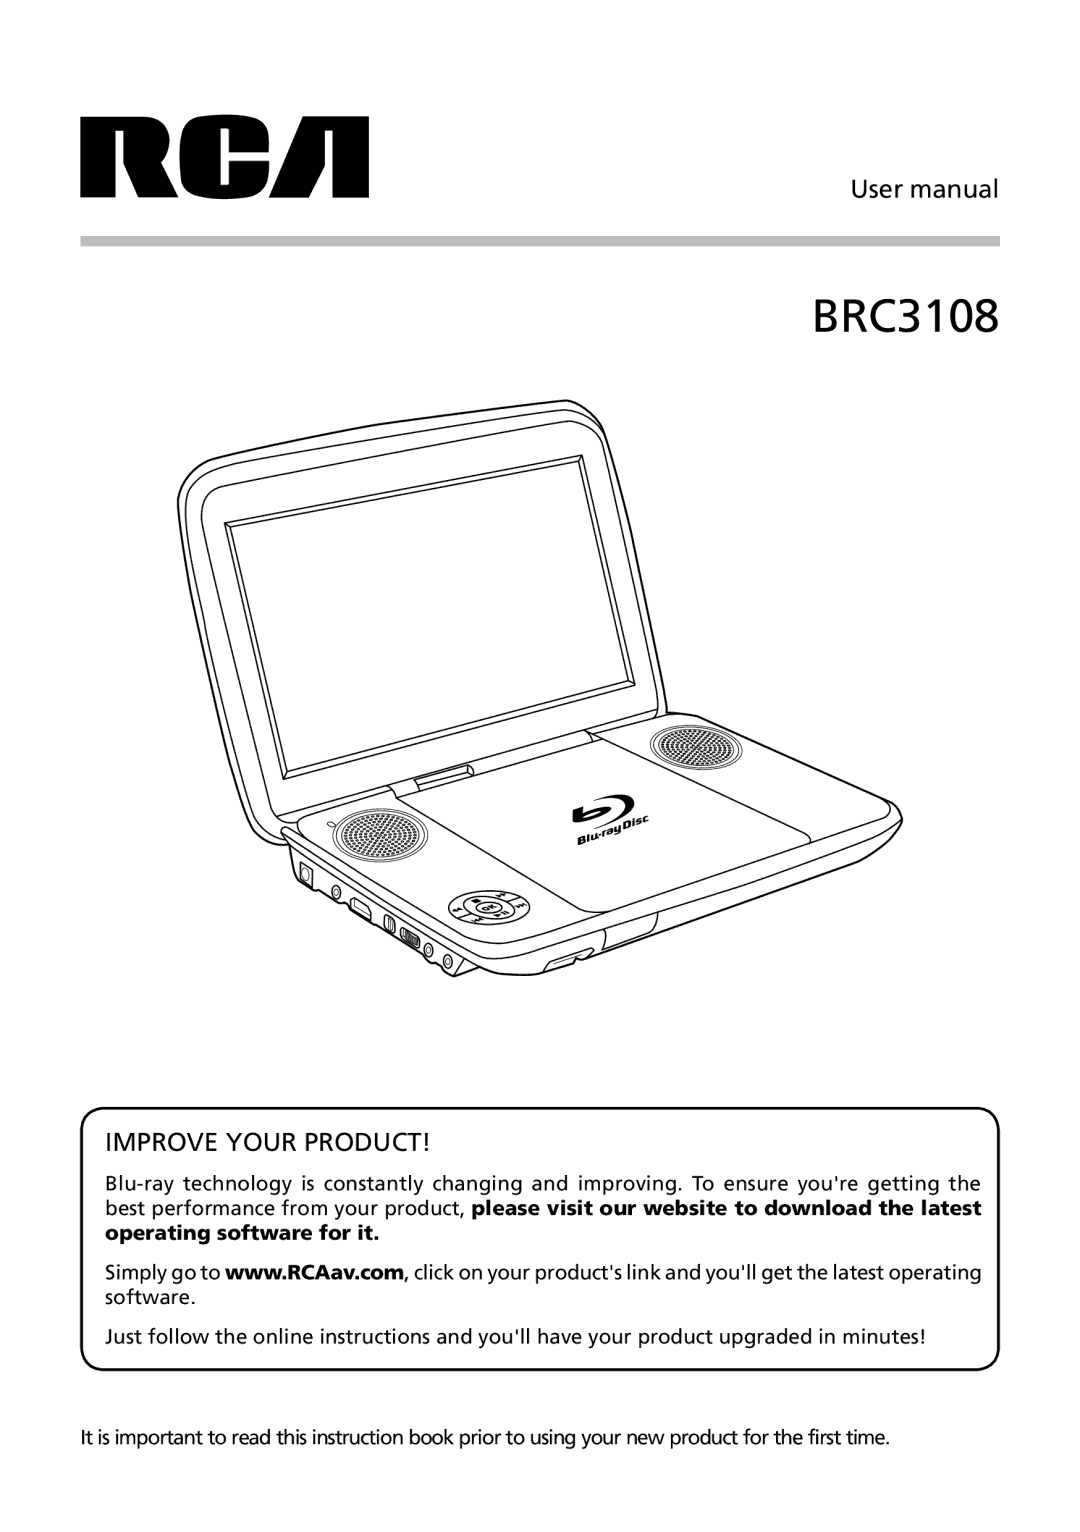 RCA BRC3108 user manual 